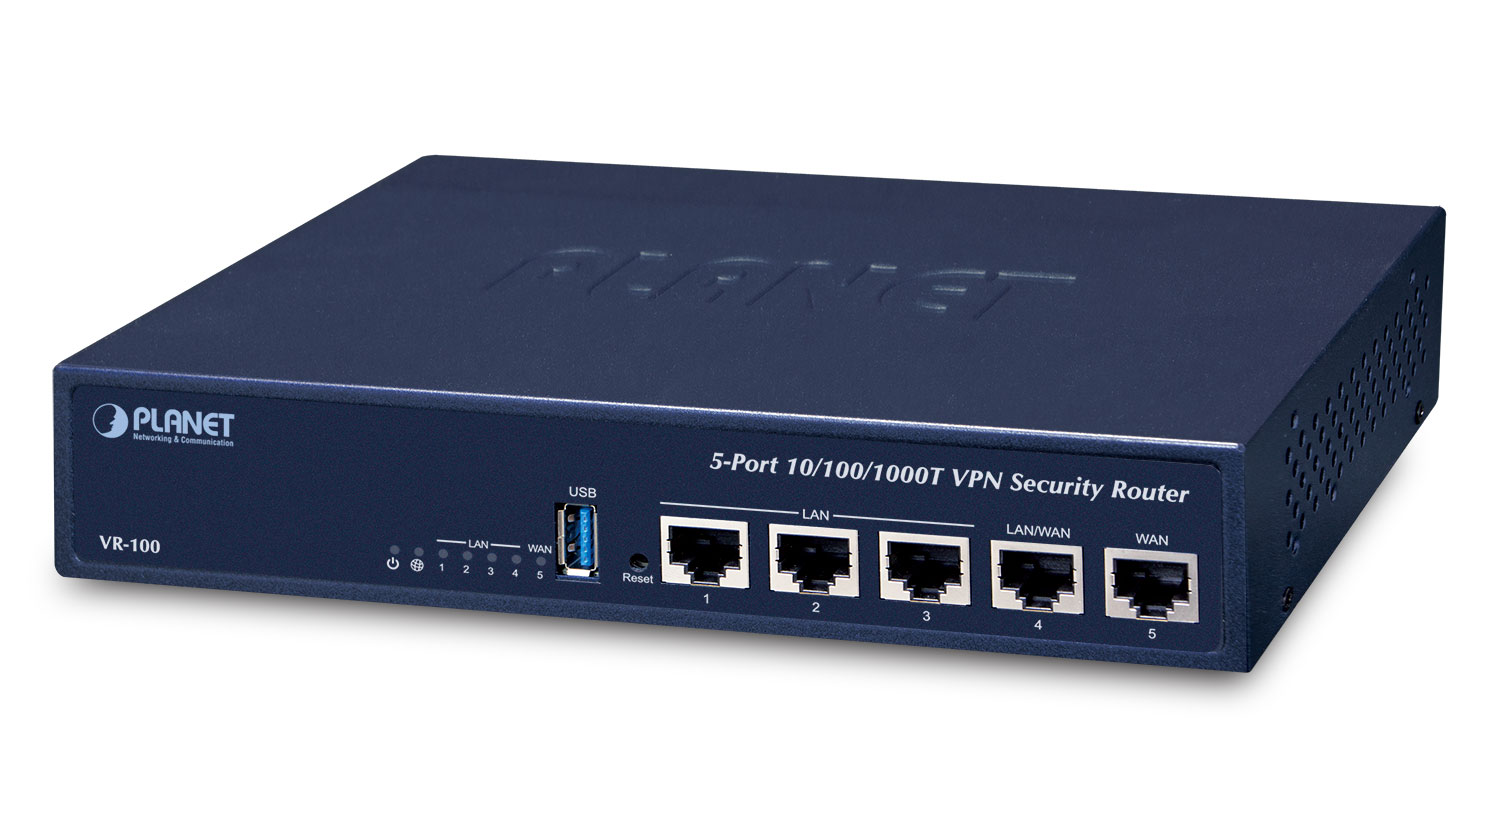 【VR-100】5-Port 10/100/1000T VPN Security Router